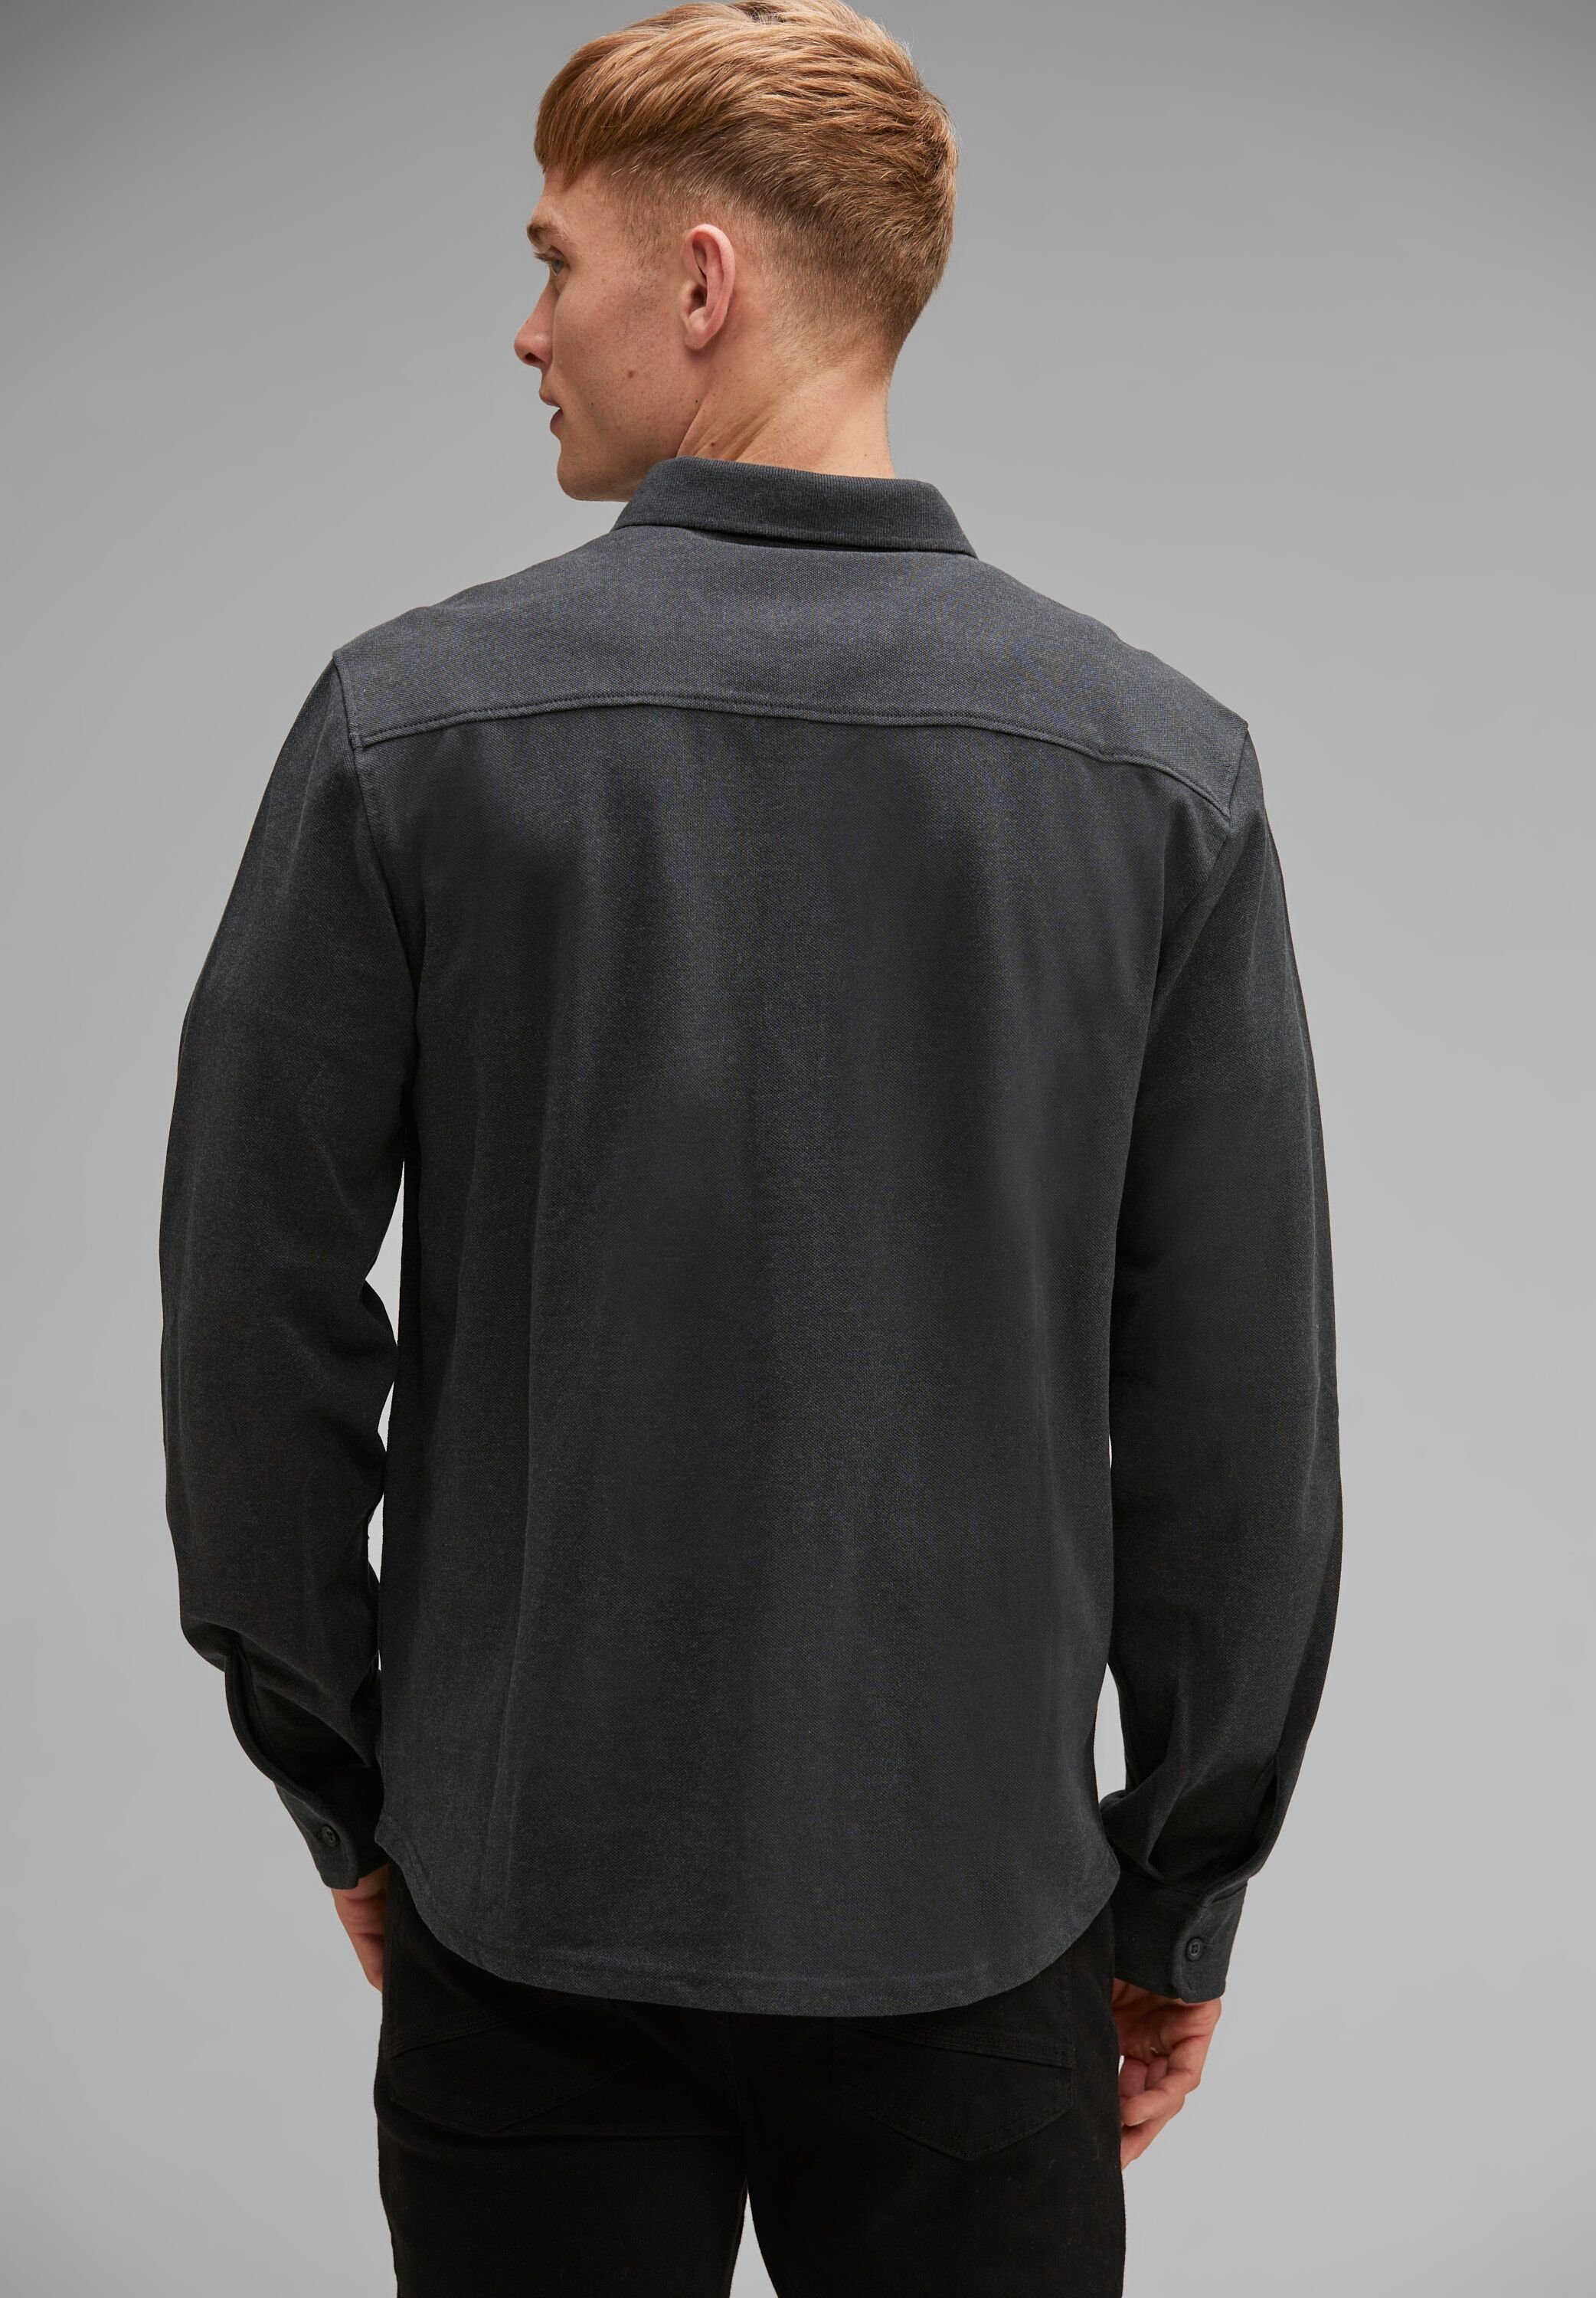 melange grey im ONE T-Shirt anthra soften Baumwoll-Mix MEN STREET